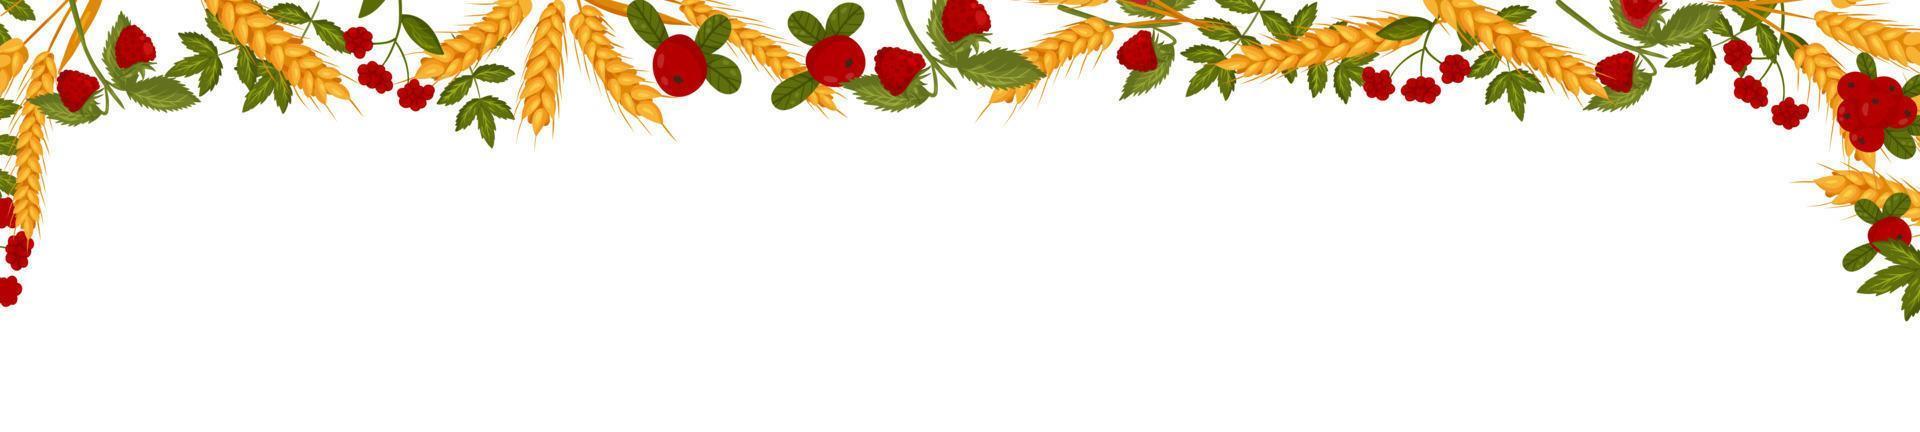 Primavera horizontal quadro, Armação com framboesa cranberries e trigo galhos. verão vetor bandeira